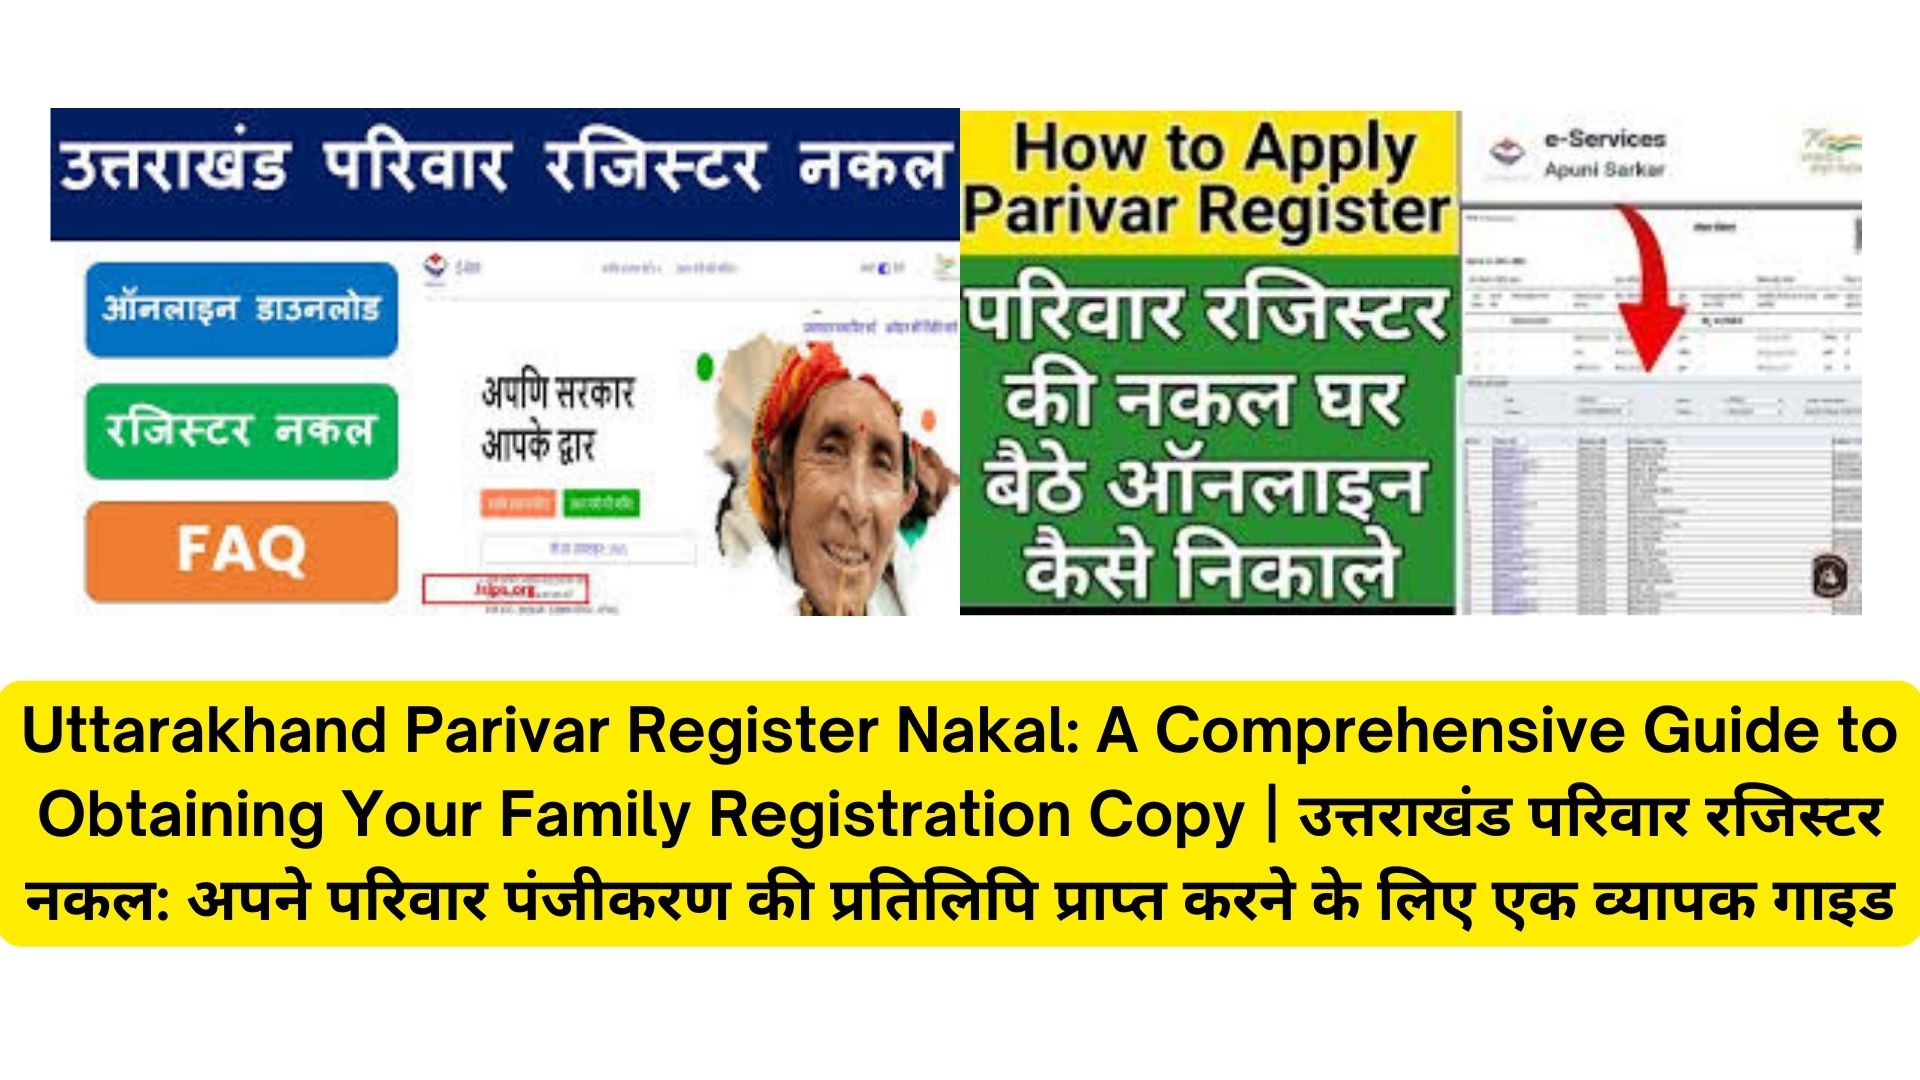 Uttarakhand Parivar Register Nakal: A Comprehensive Guide to Obtaining Your Family Registration Copy | उत्तराखंड परिवार रजिस्टर नकल: अपने परिवार पंजीकरण की प्रतिलिपि प्राप्त करने के लिए एक व्यापक गाइड